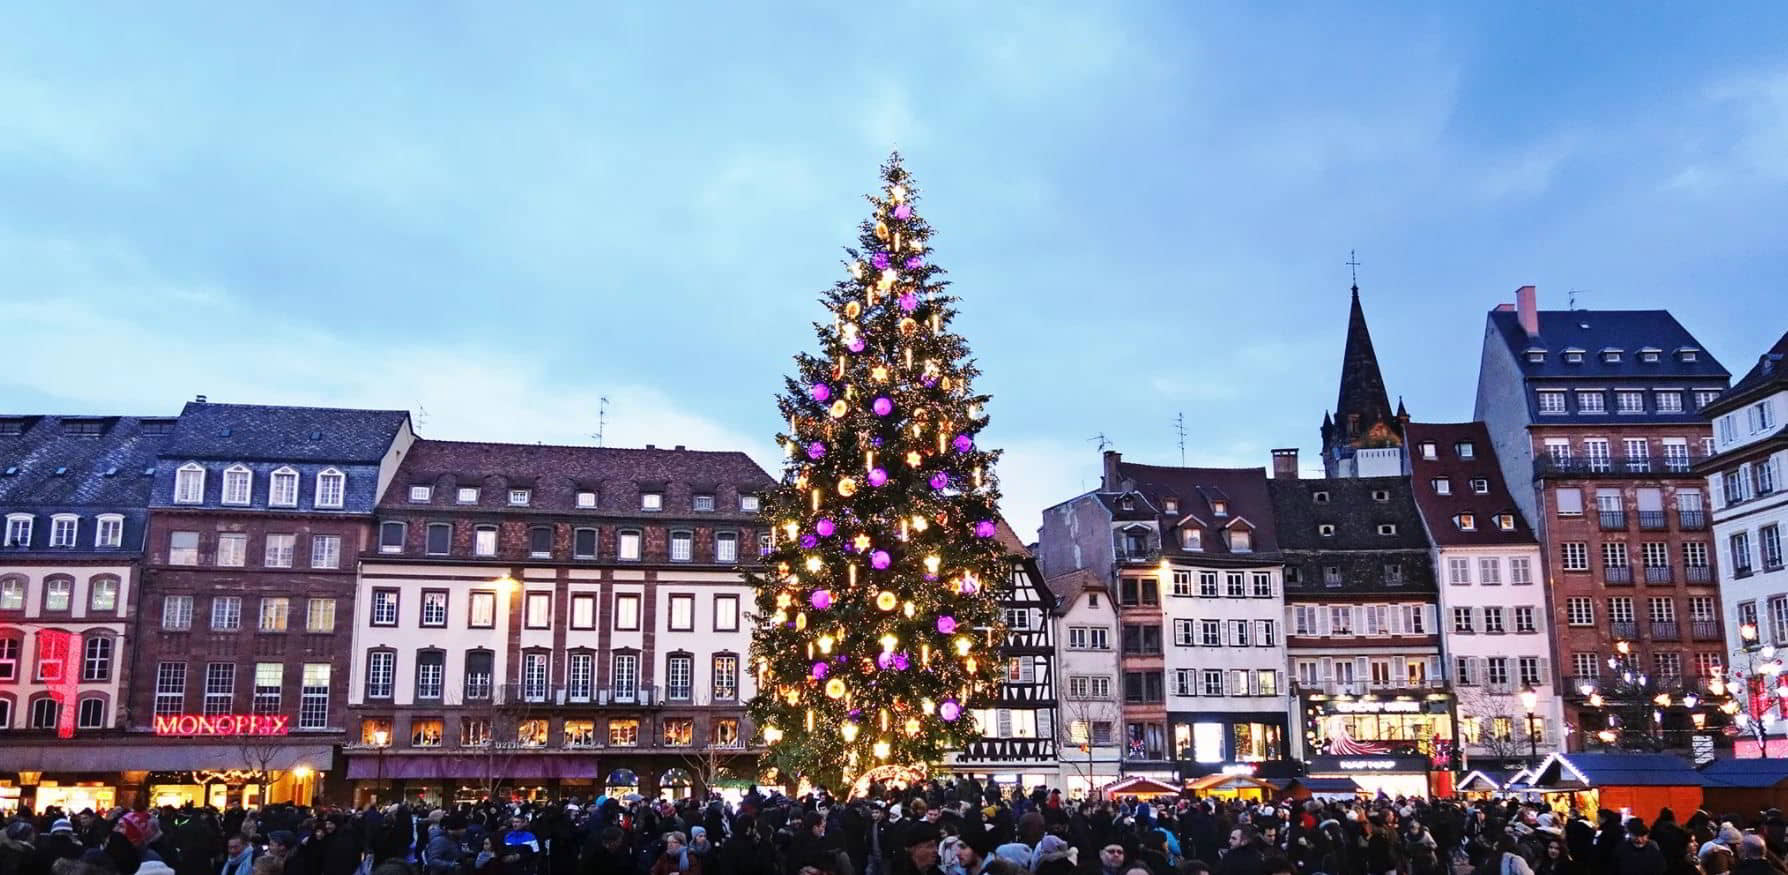 Strasbourg Christmas Market Christkindelsmärik Capitale de Noel (2)